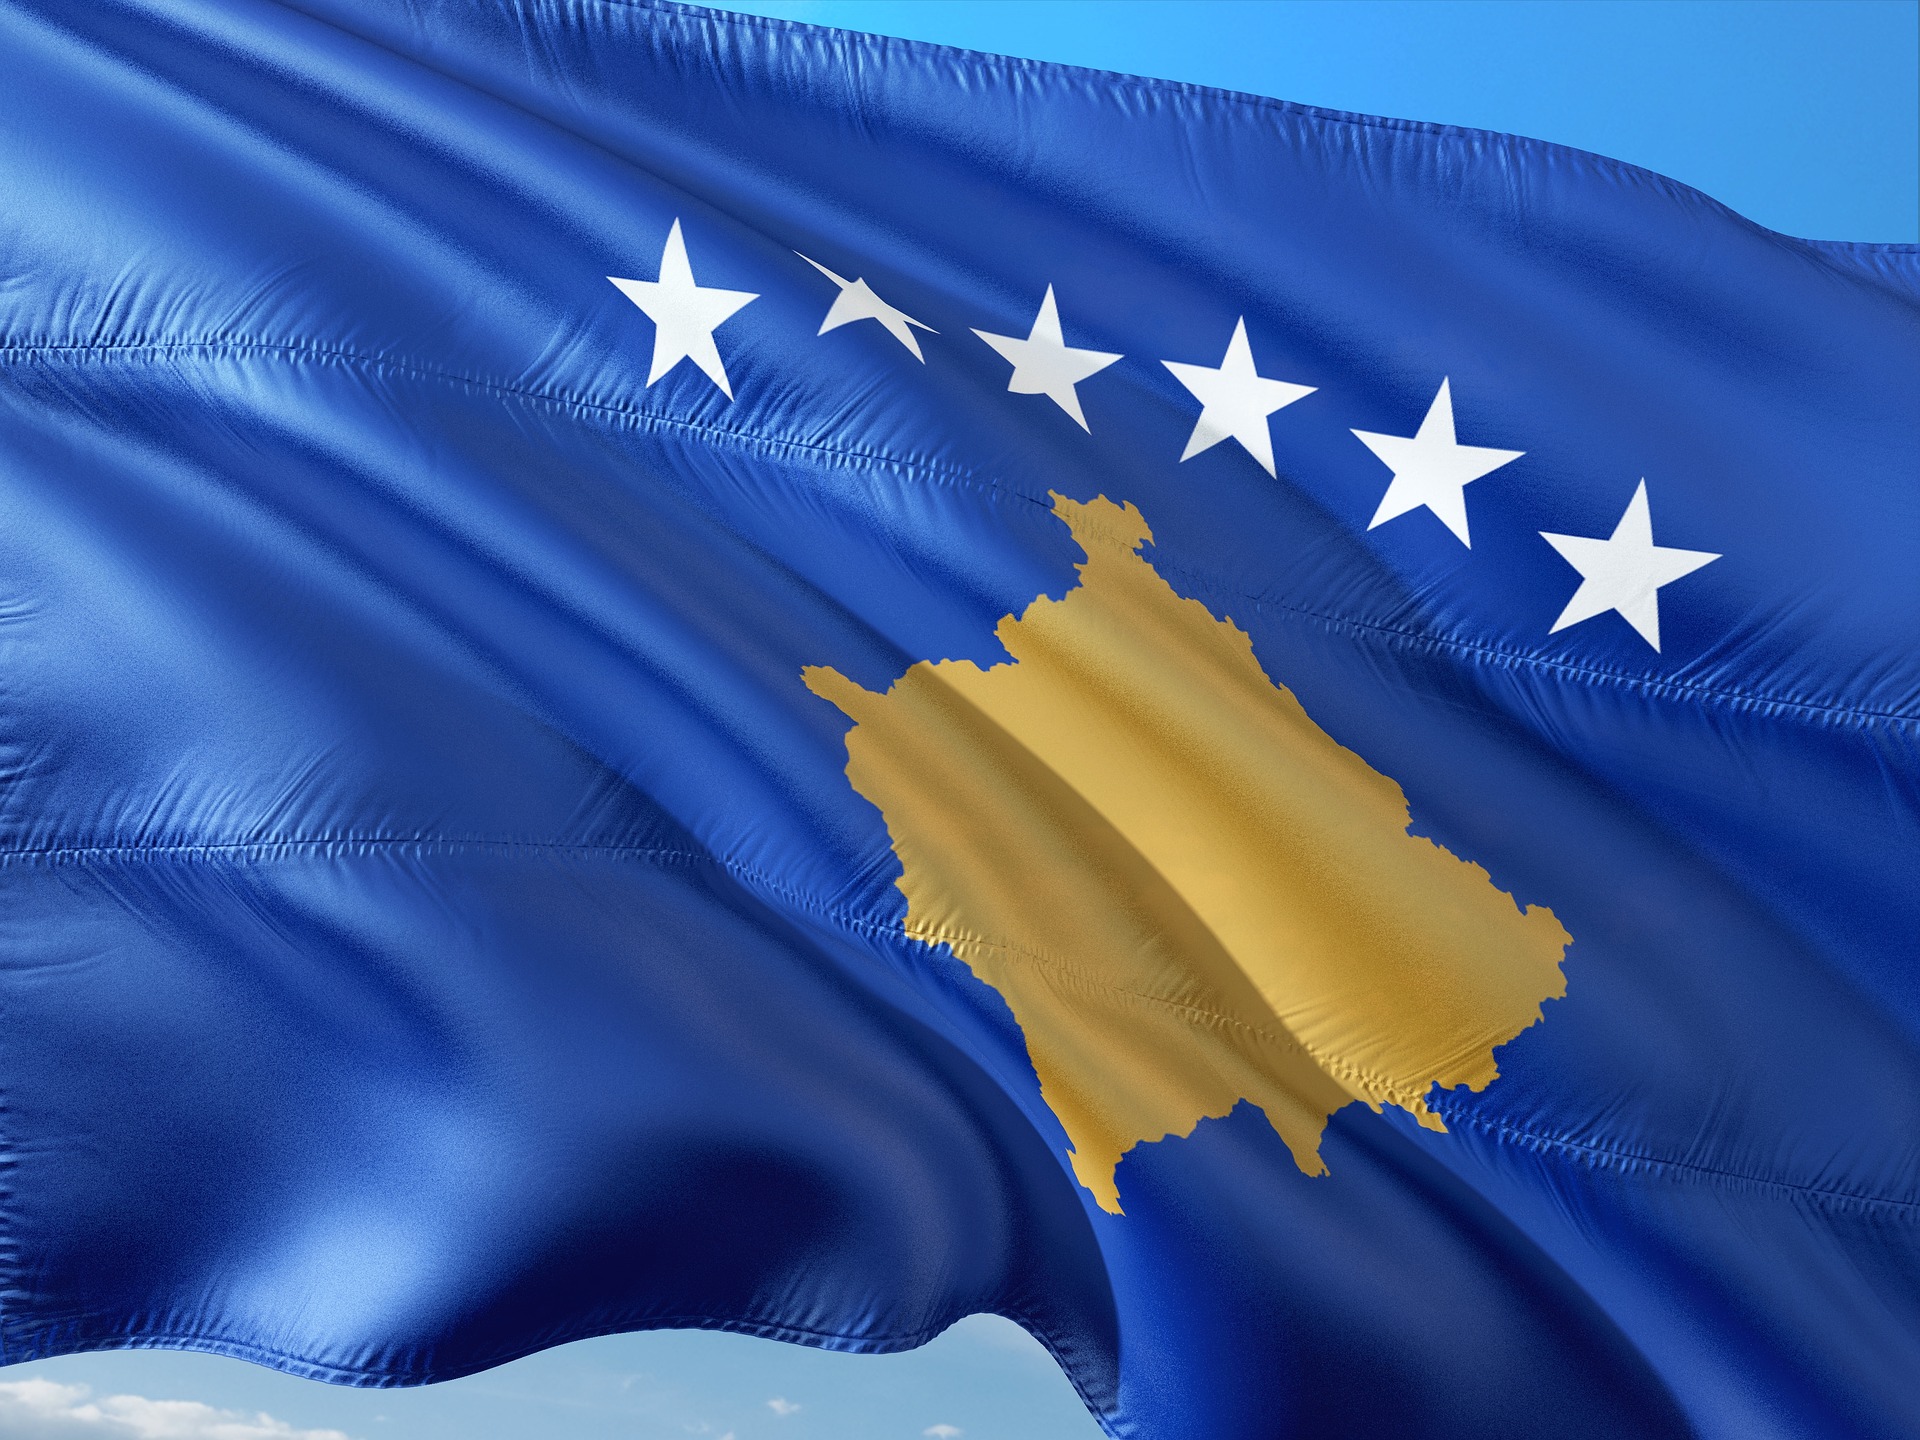 Kosovo: Nepravedna odluka EU o skidanju sa dnevnog reda liberalizacije viza